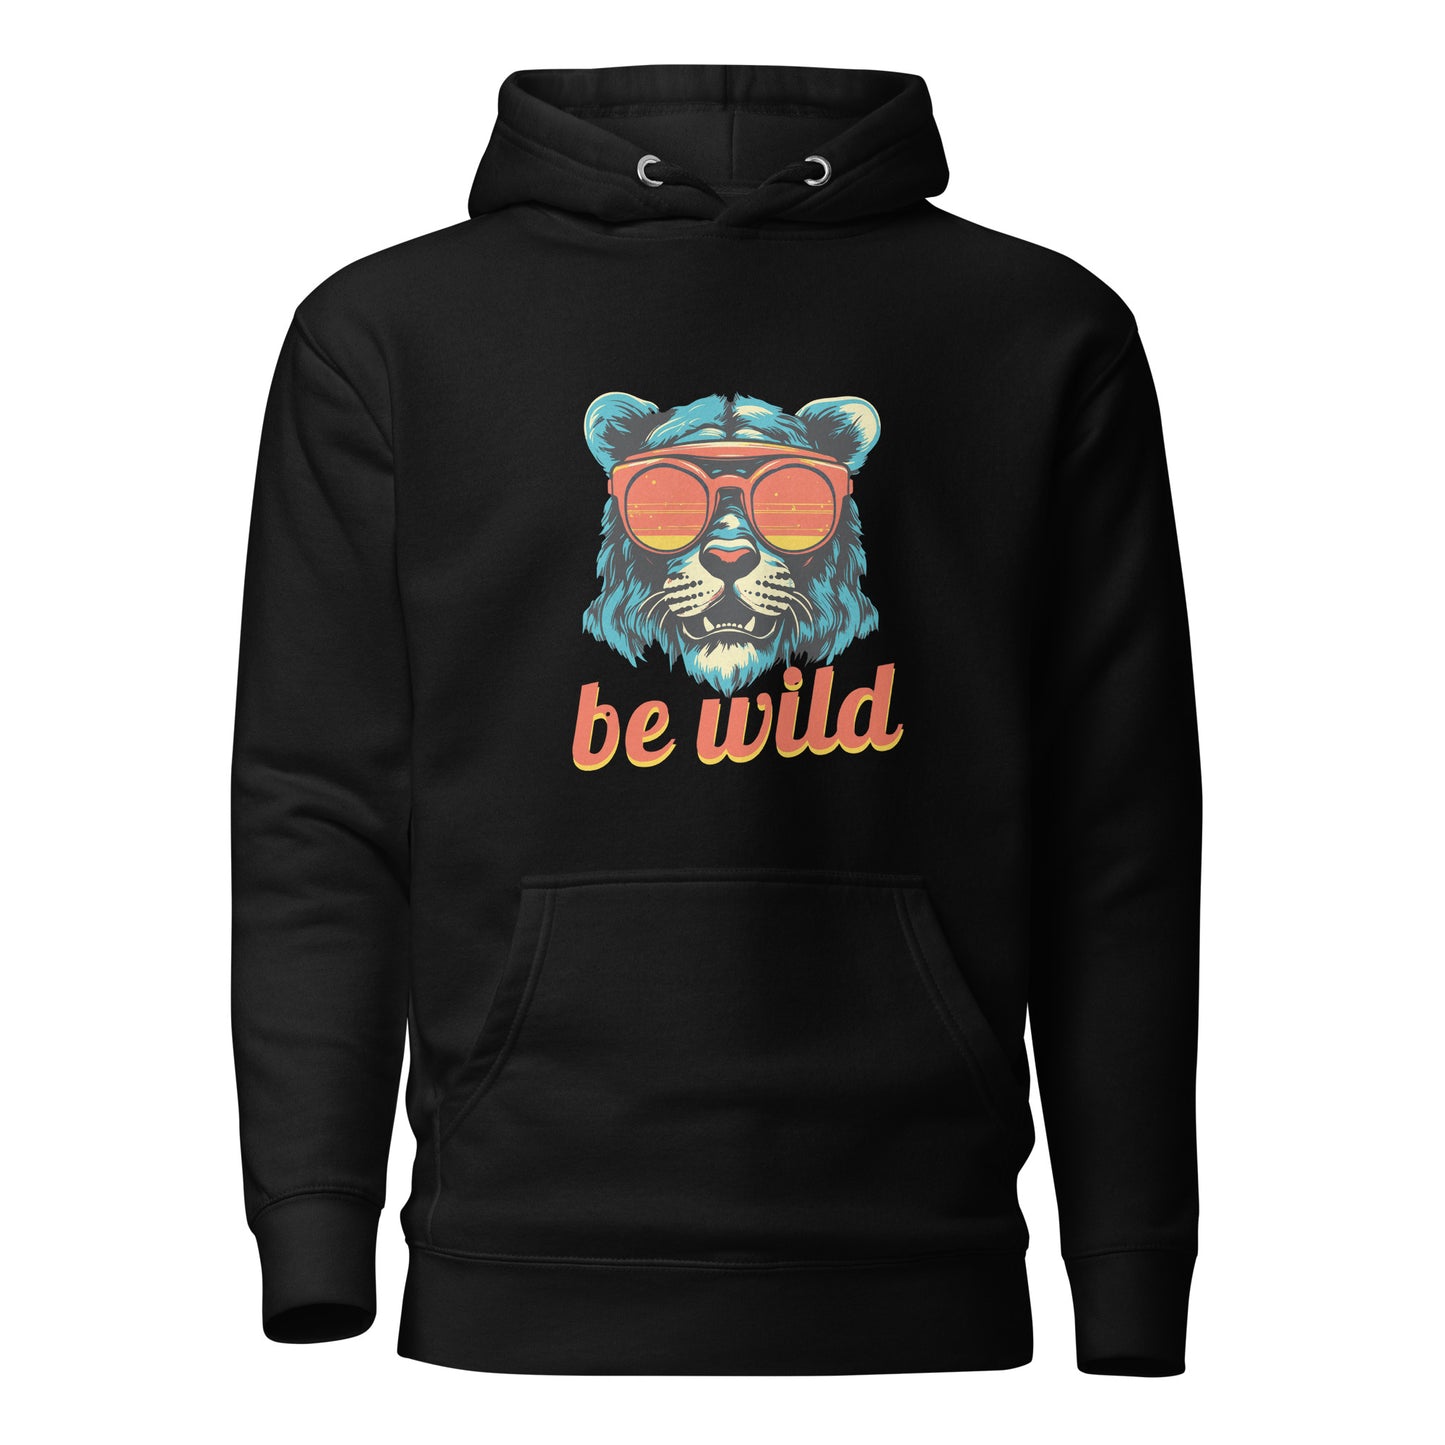 "Be Wild" Hoodie